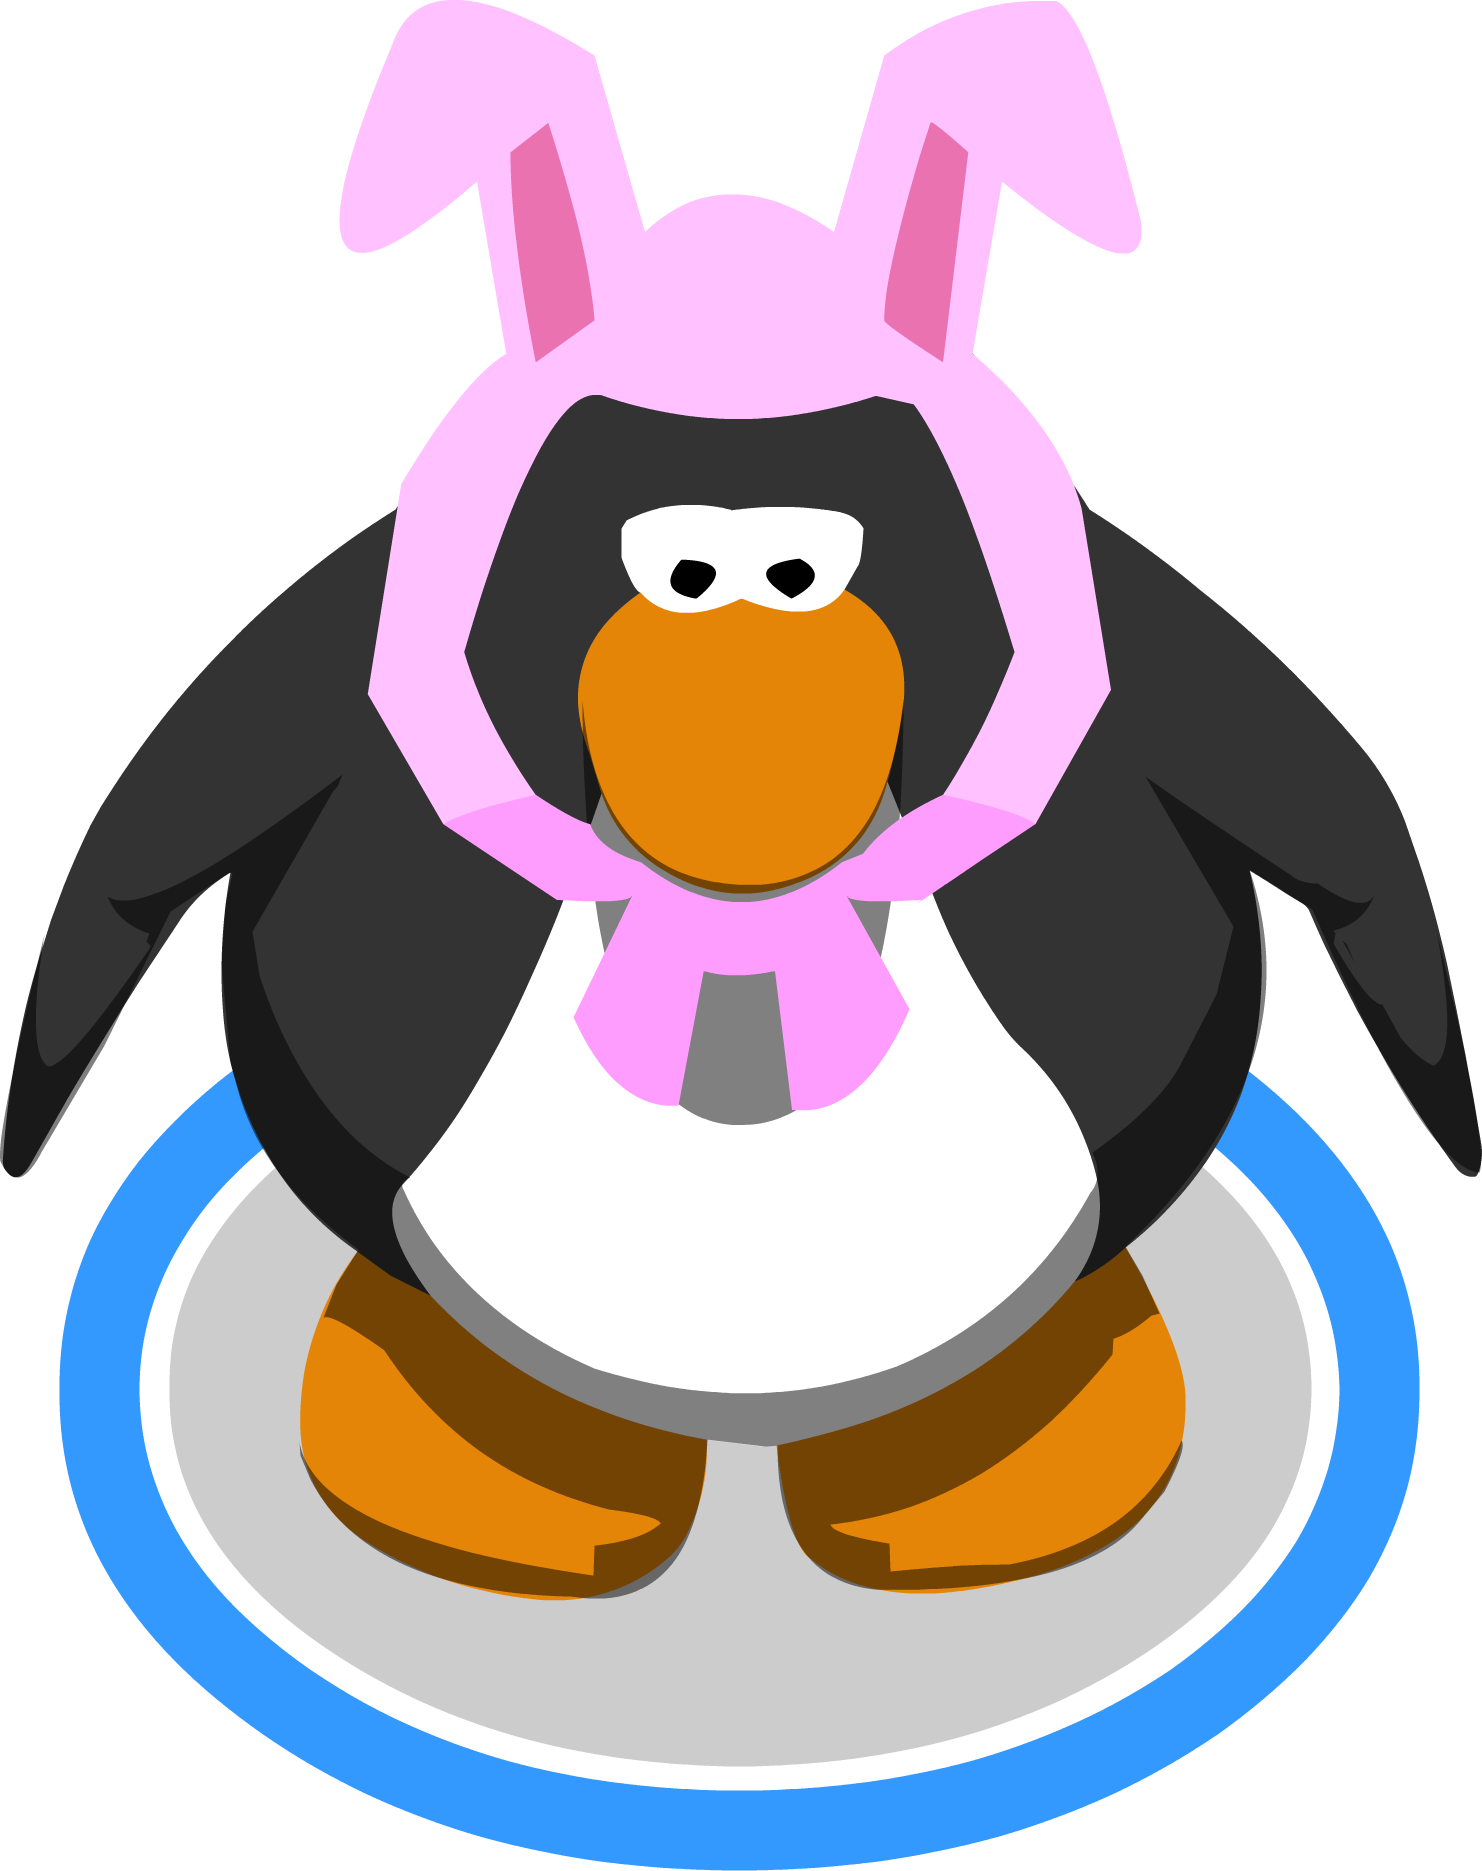 22, March 7, 2018 - Club Penguin 3d Penguin (1482x1871)